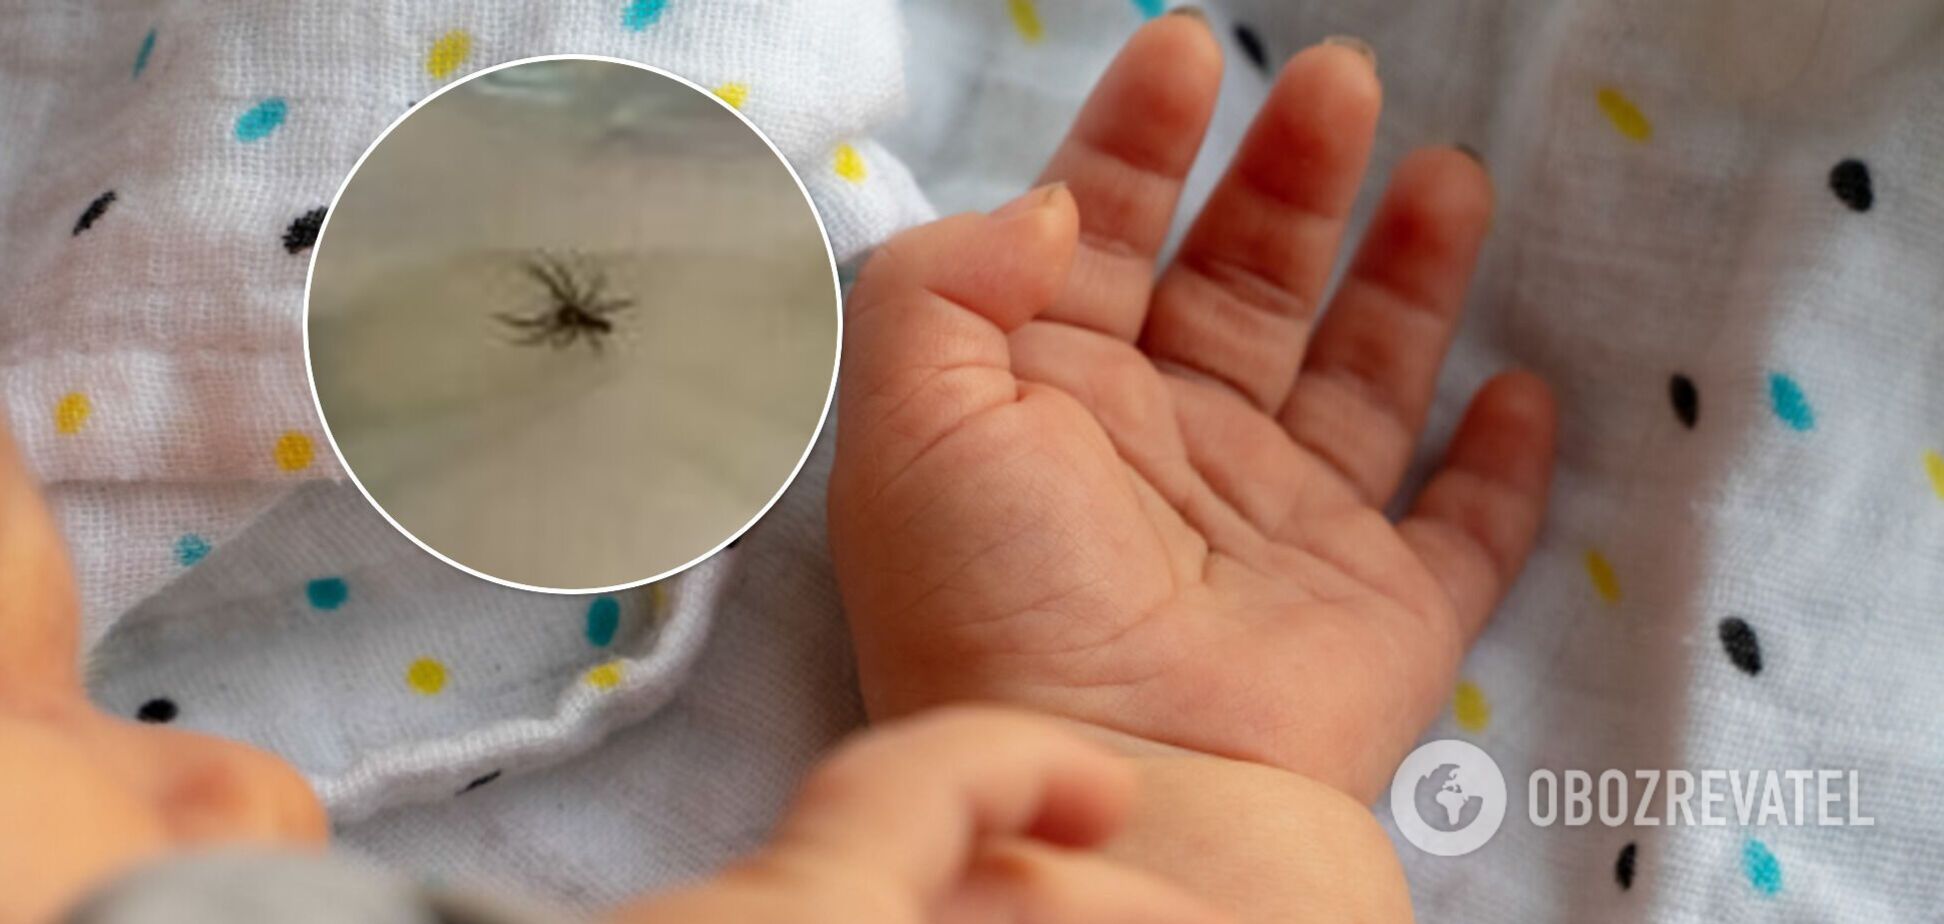 Австралійка помітила отруйного павука в підгузку дитини. Фото